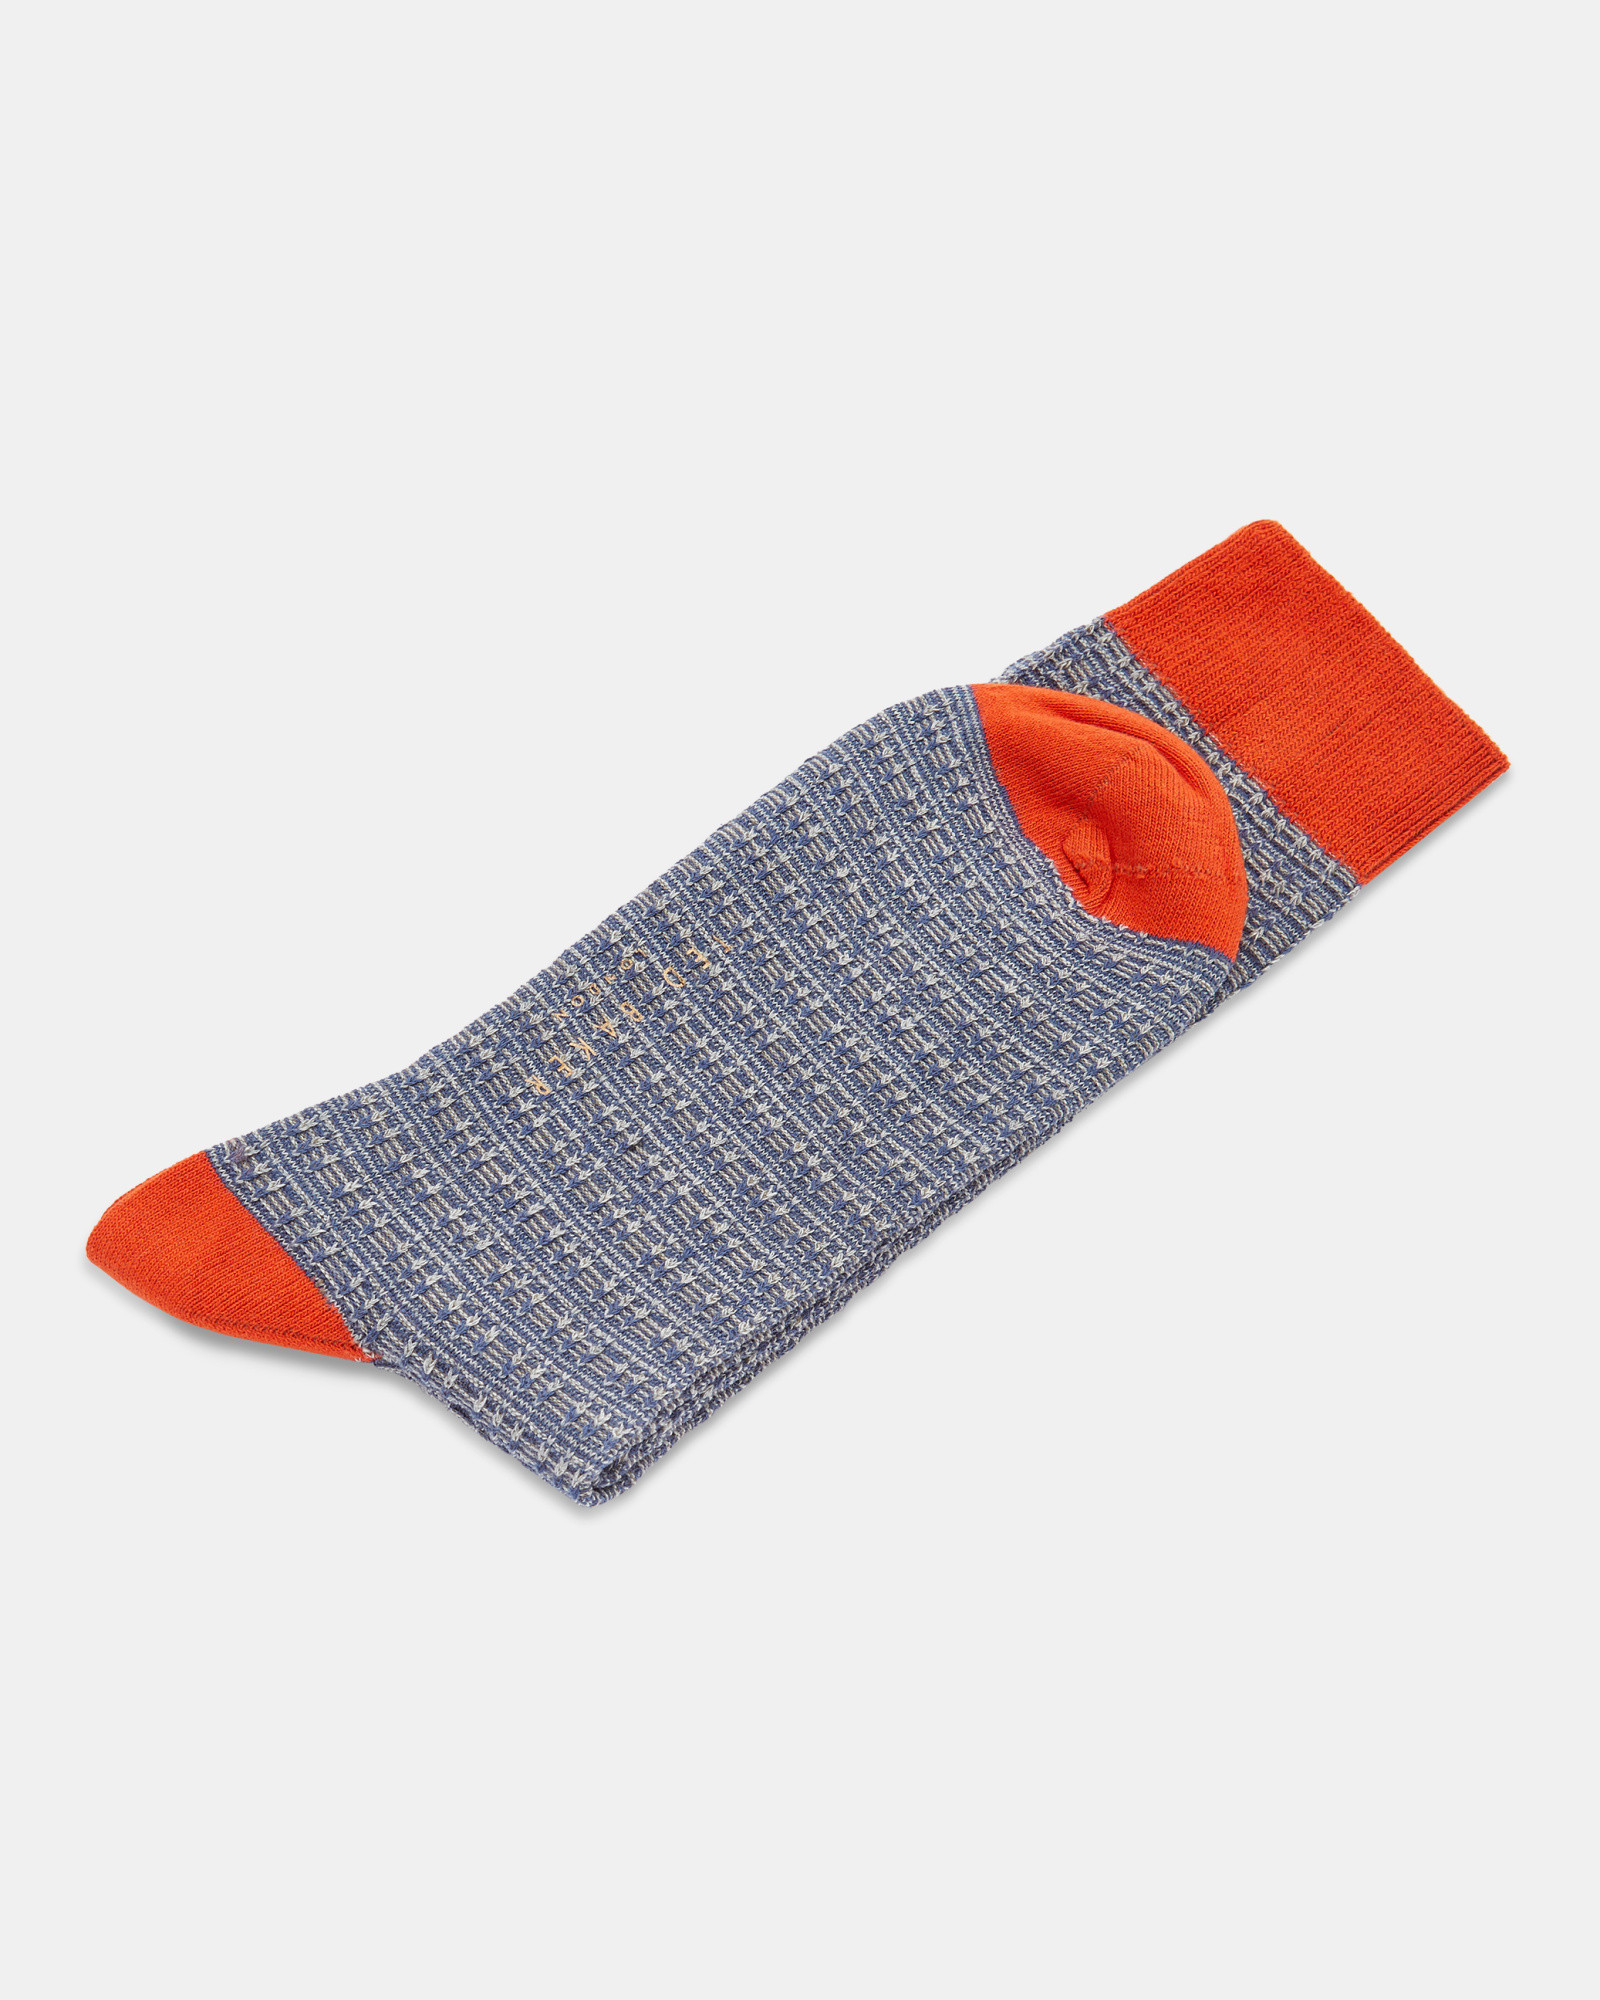 GROOV Grid pattern sock